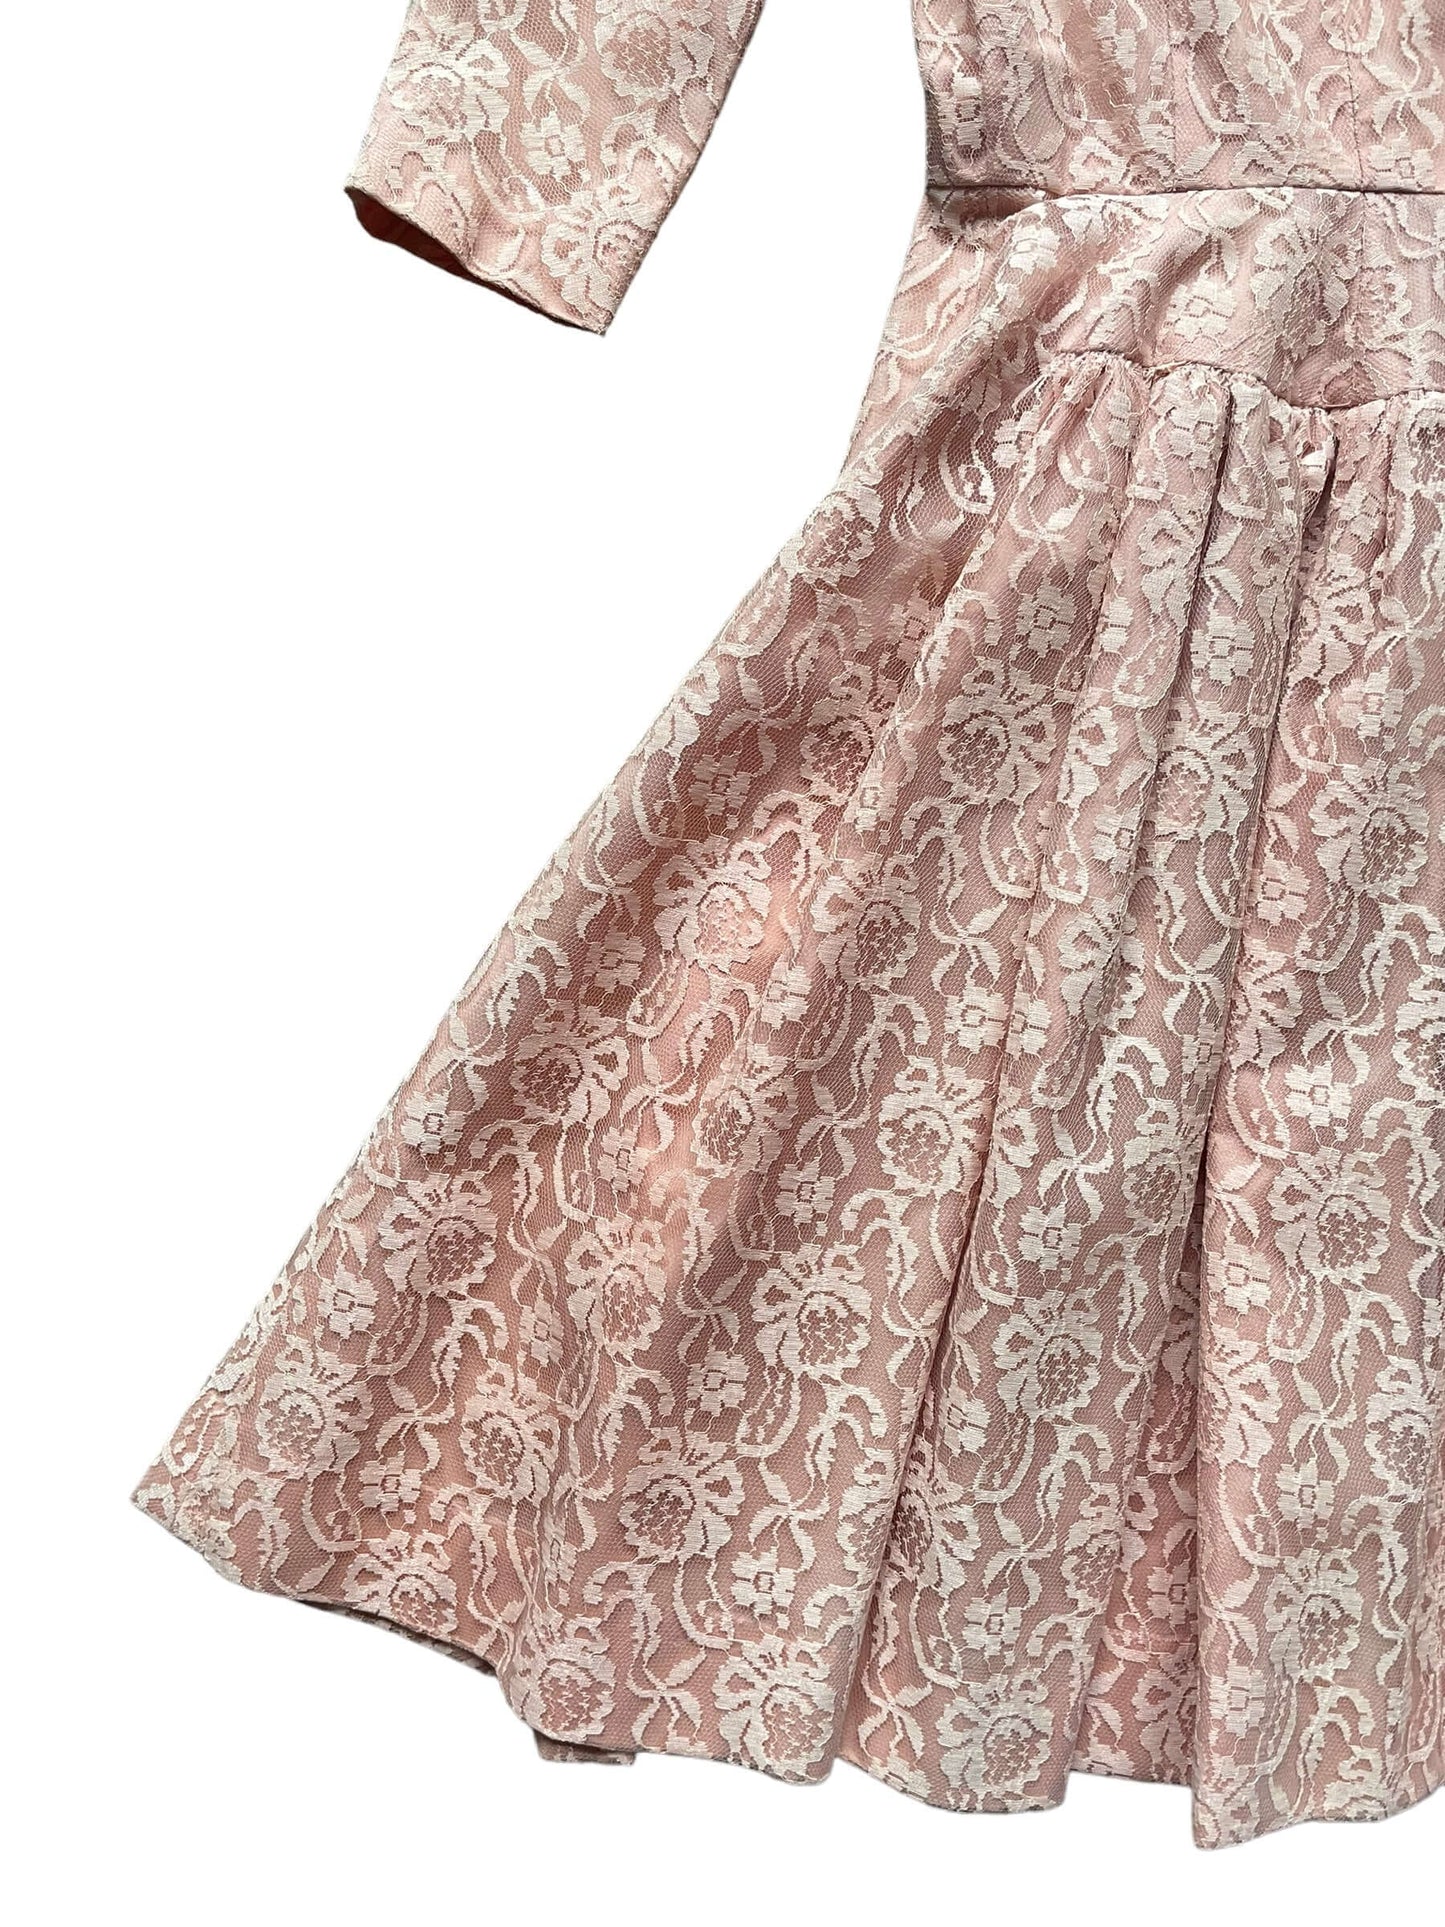 Back left of skirt Vintage 1950s Handmade Pink Lace Formal Dress |  Barn Owl Vintage Dresses | Seattle Vintage Ladies Clothing